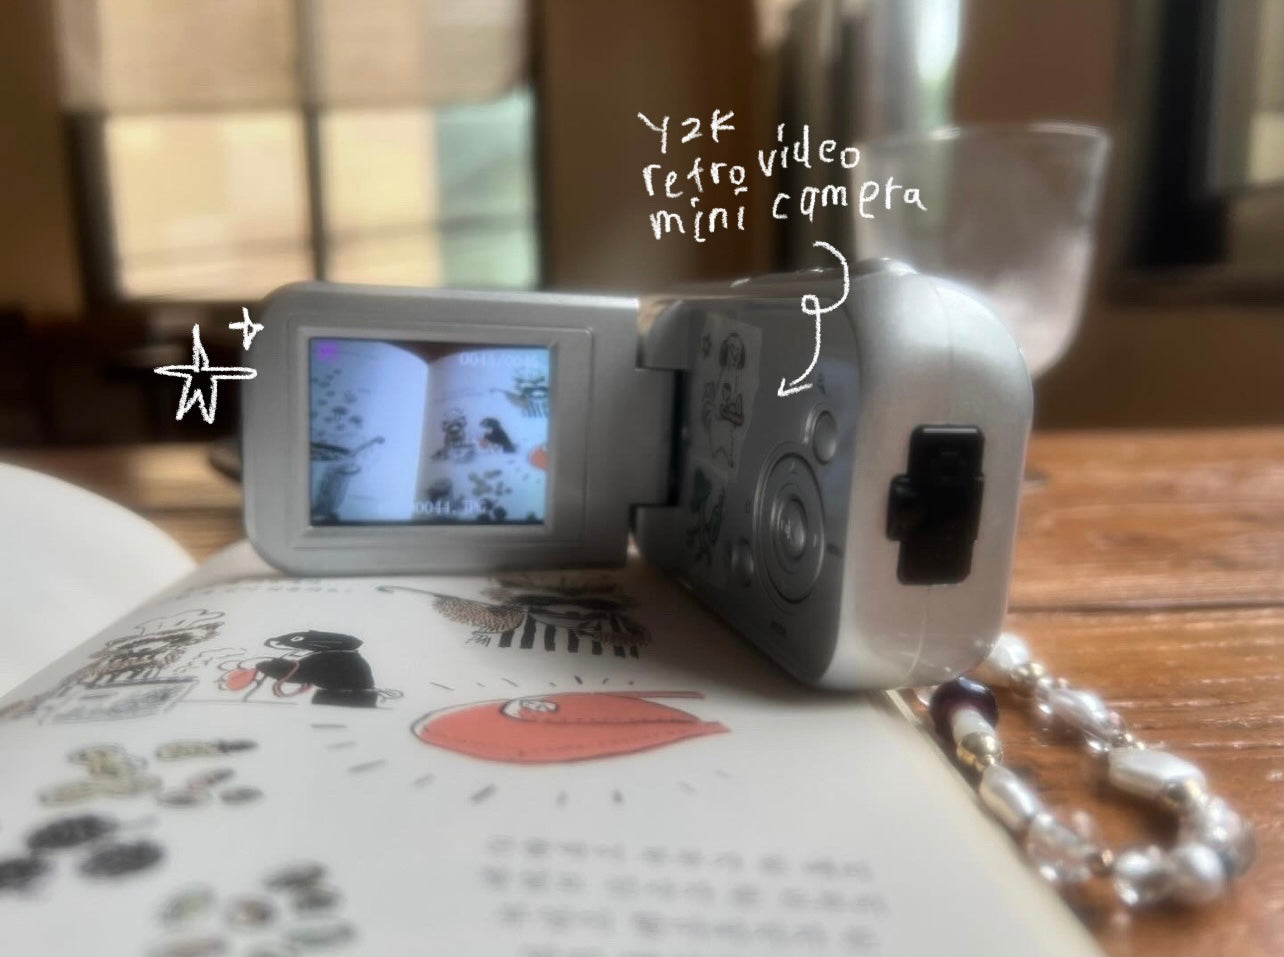 Y2K Retro Video Mini Camera 🎥